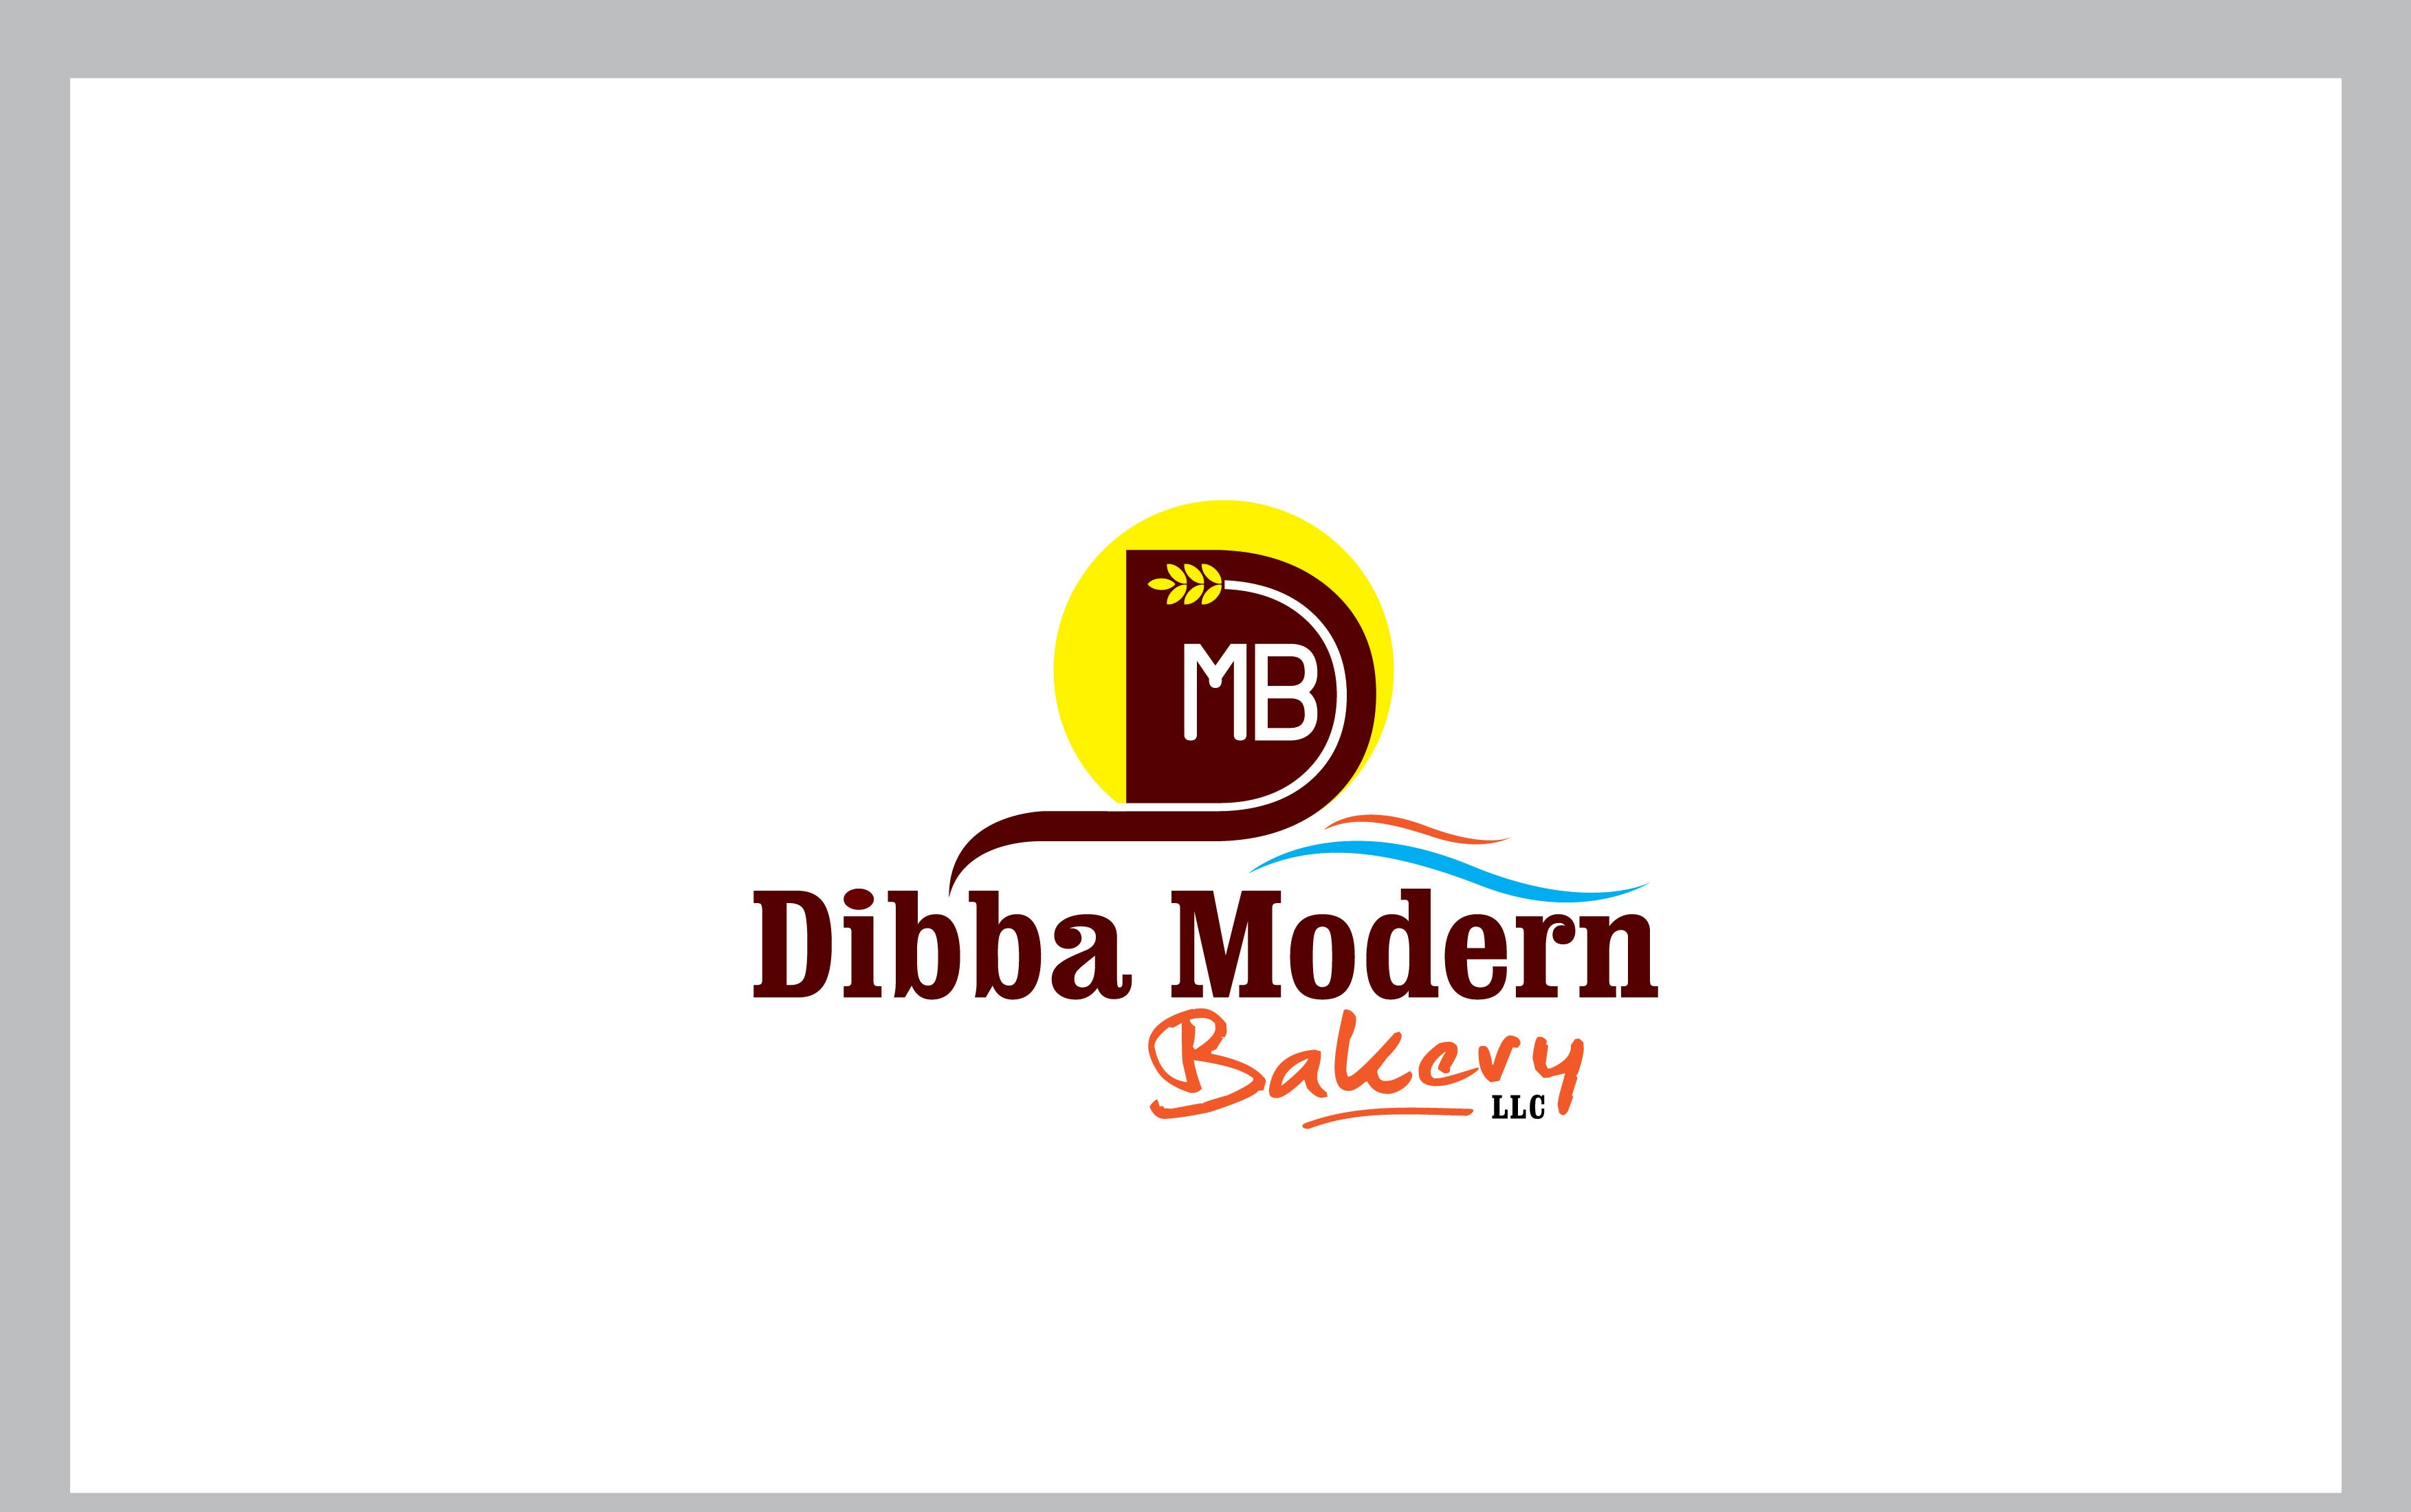 Dibba Modern Bakery LLC